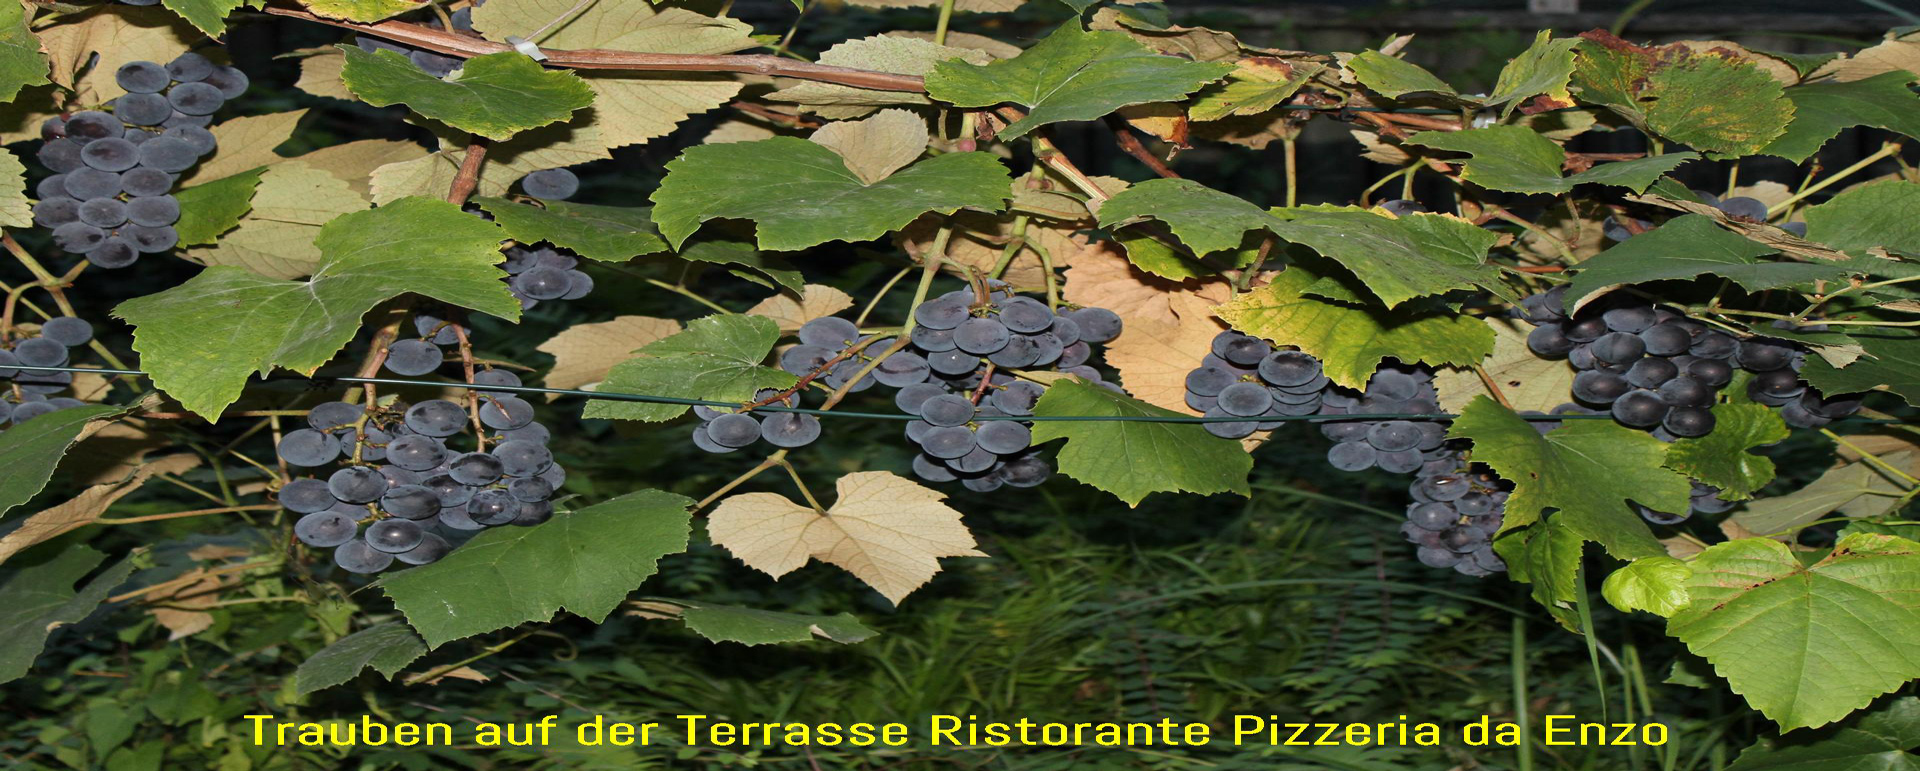 Weintrauben auf der Terrasse Ristorante Pizzeria da Enzo